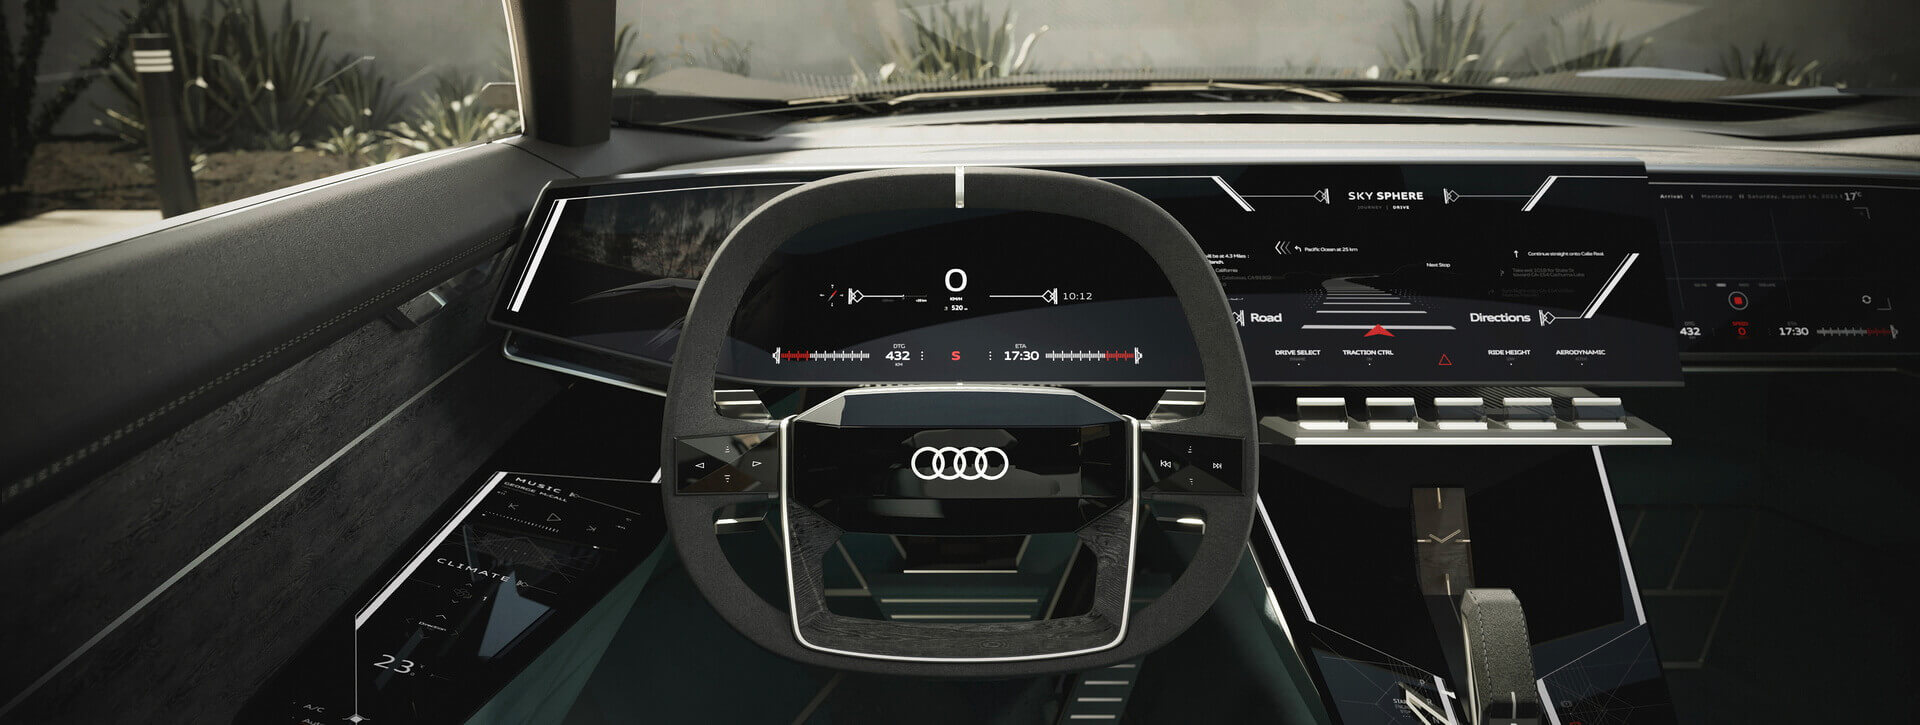 Полностью цифровой интерьер Audi Skysphere